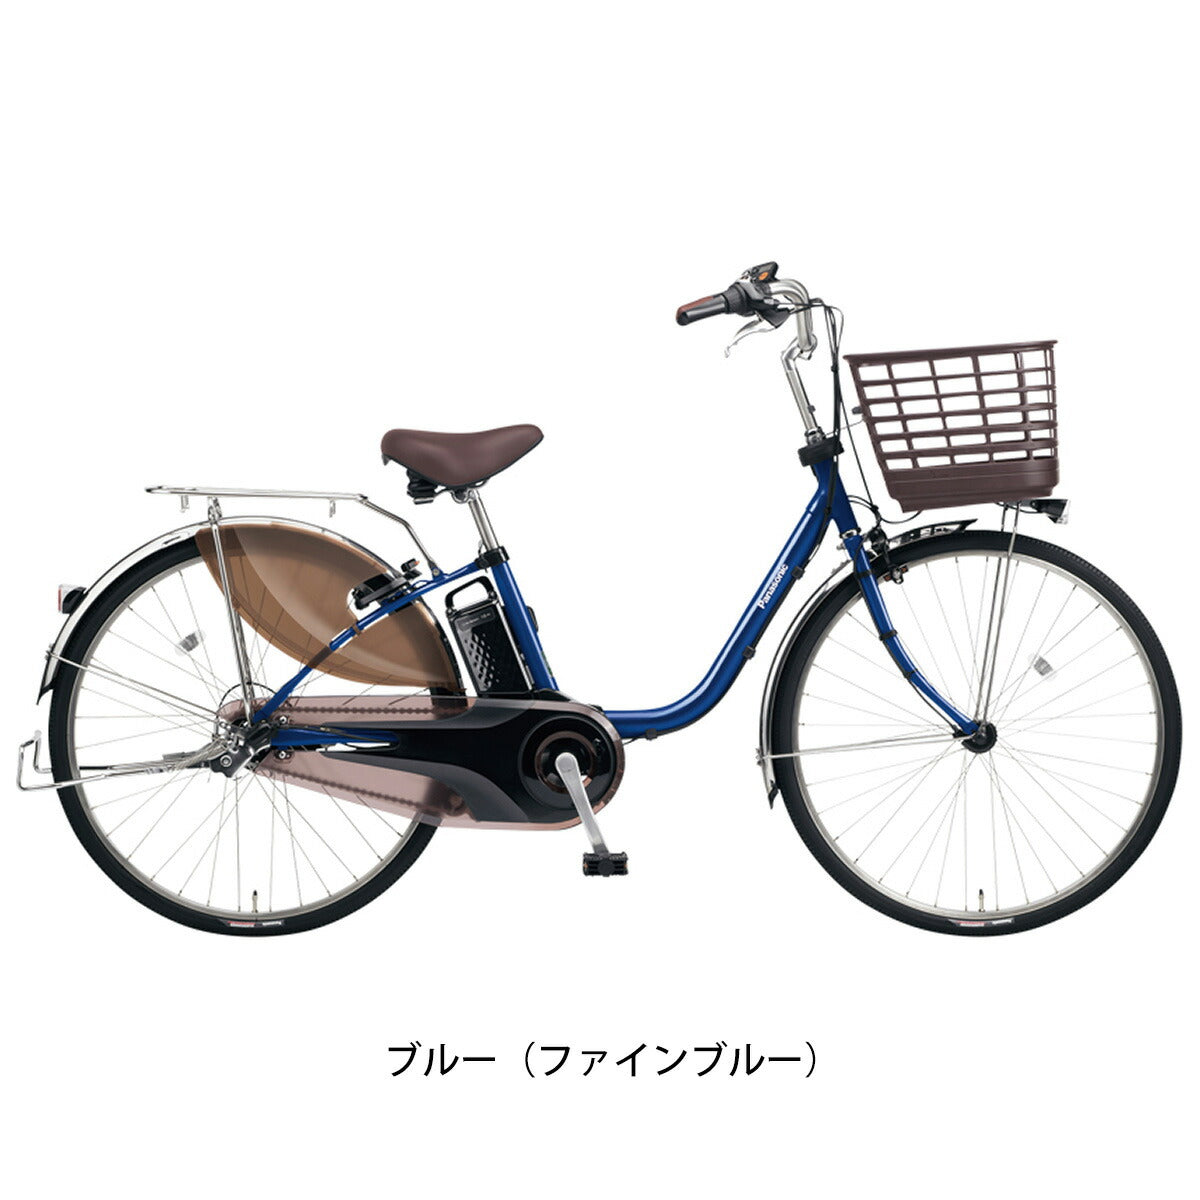 Panasonic 電動自転車ビビDX 26インチ - 電動アシスト自転車